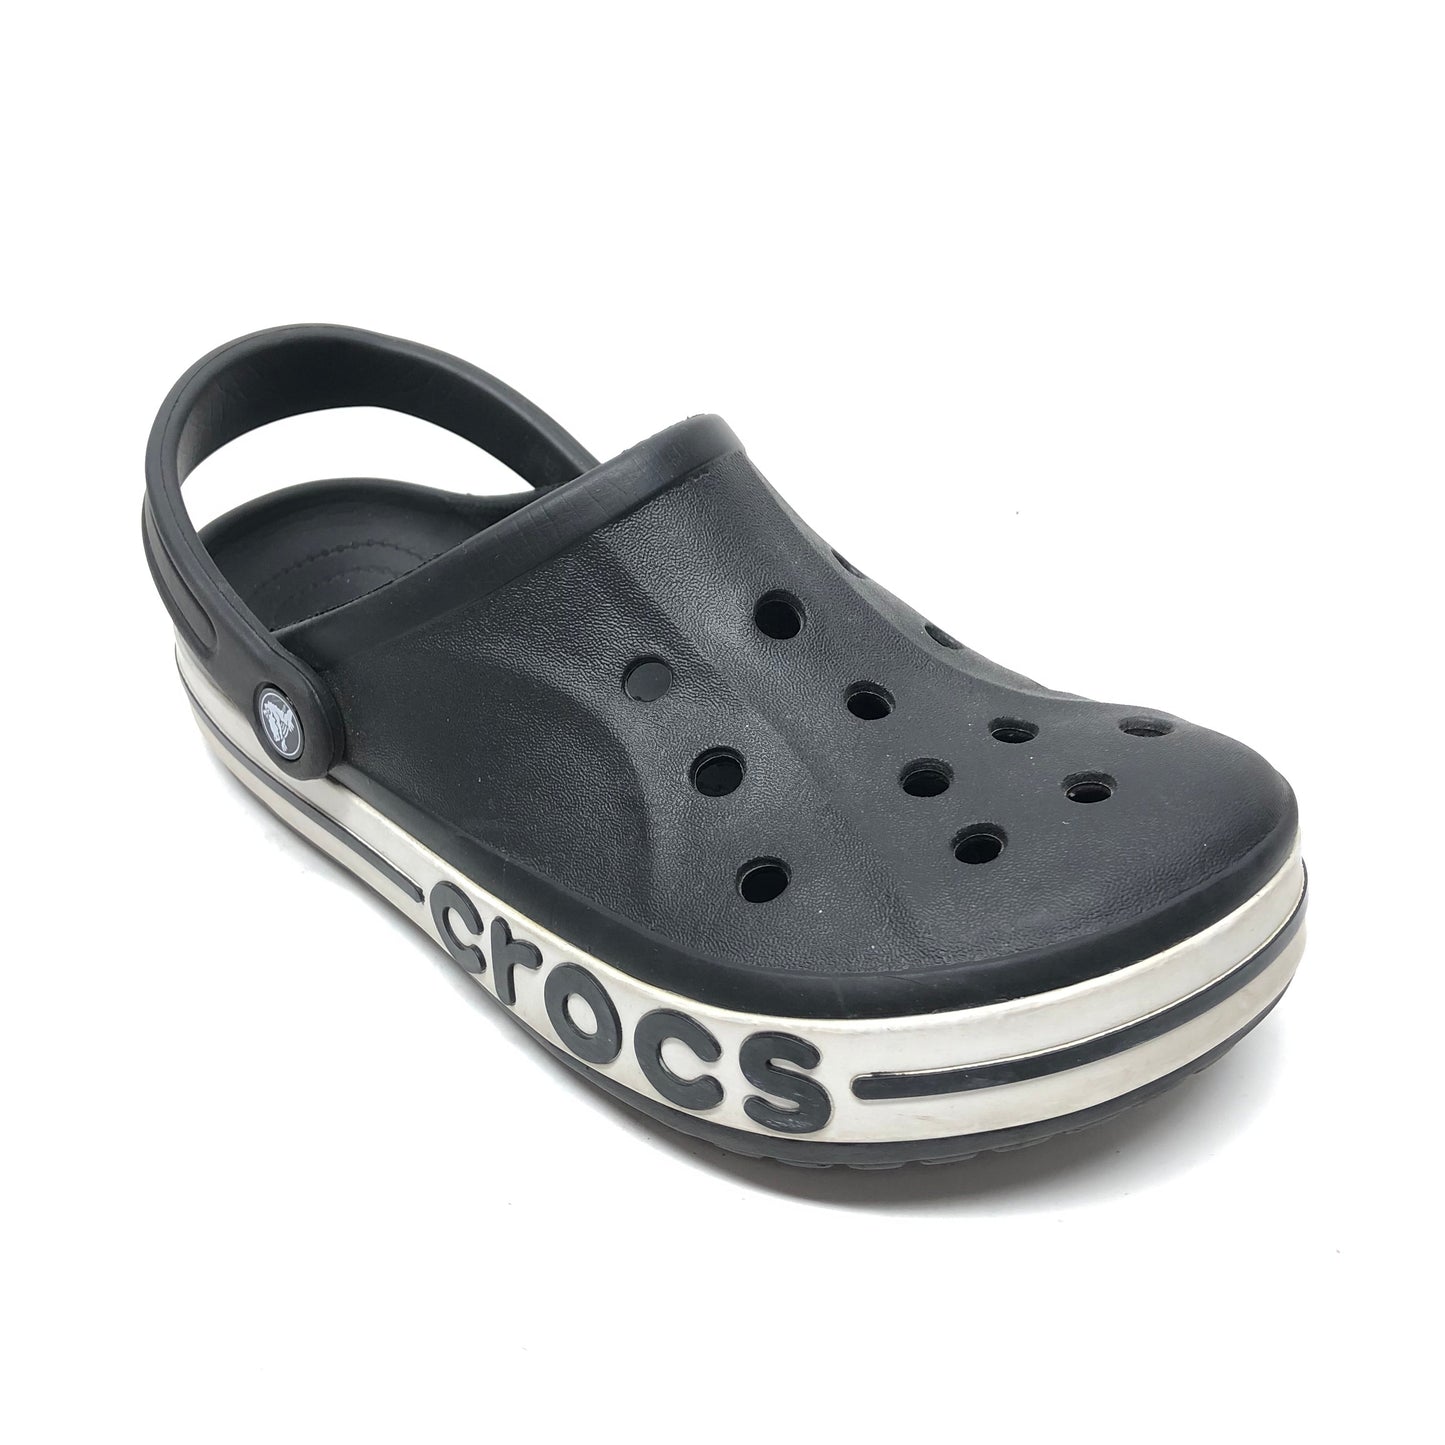 Black Sandals Sport Crocs, Size 10